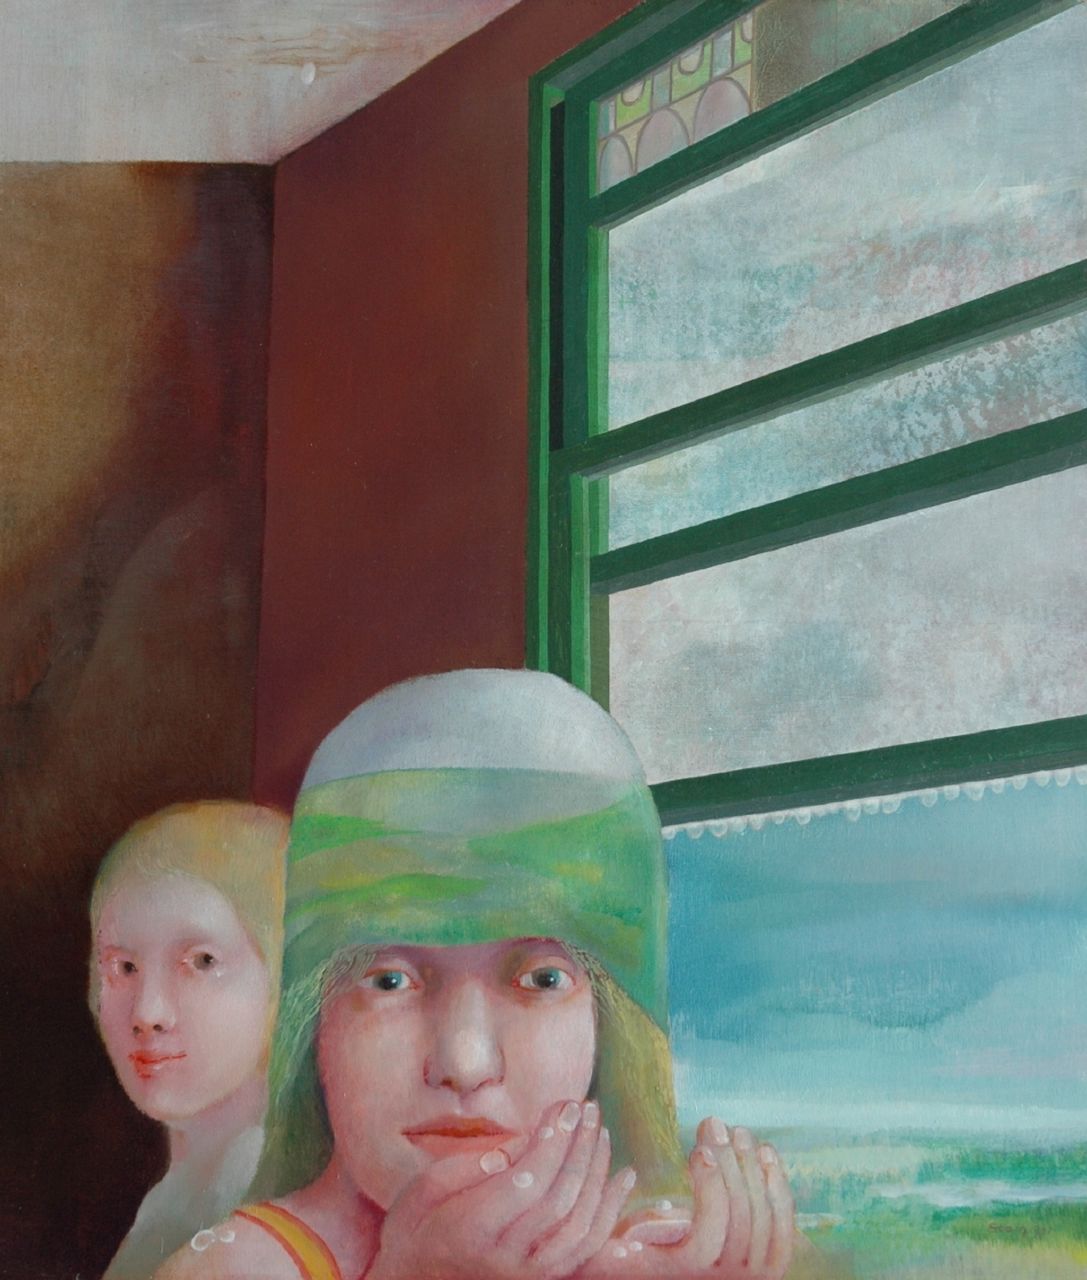 Martin Stam | Flevopolder I, Öl auf Malereifaser, 60,0 x 52,2 cm, signed l.r. und painted 1971